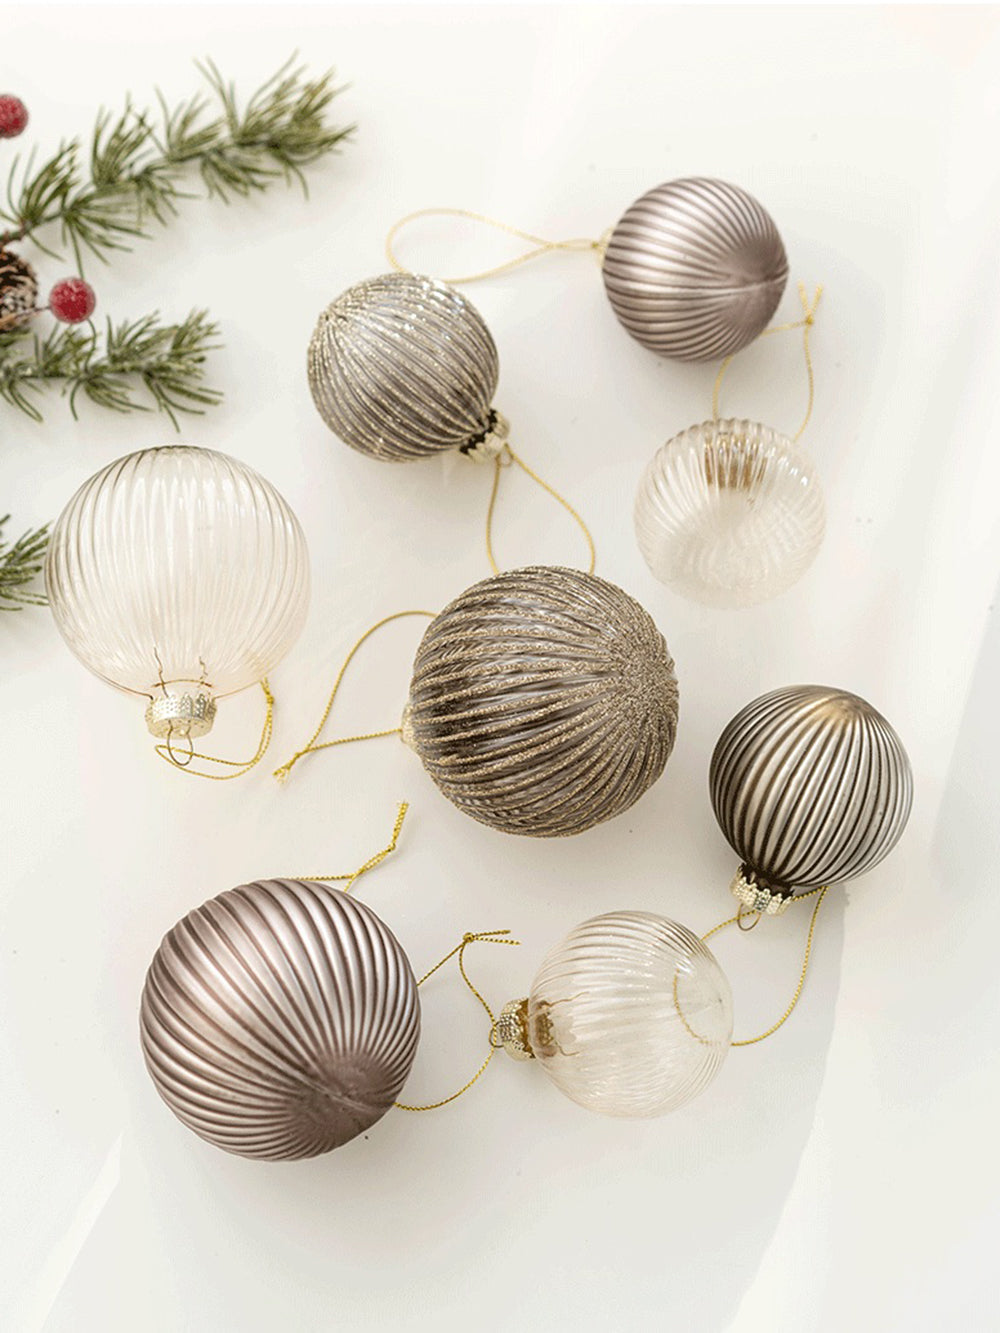 Juego de decoración de árbol de Navidad con bola de cristal navideña